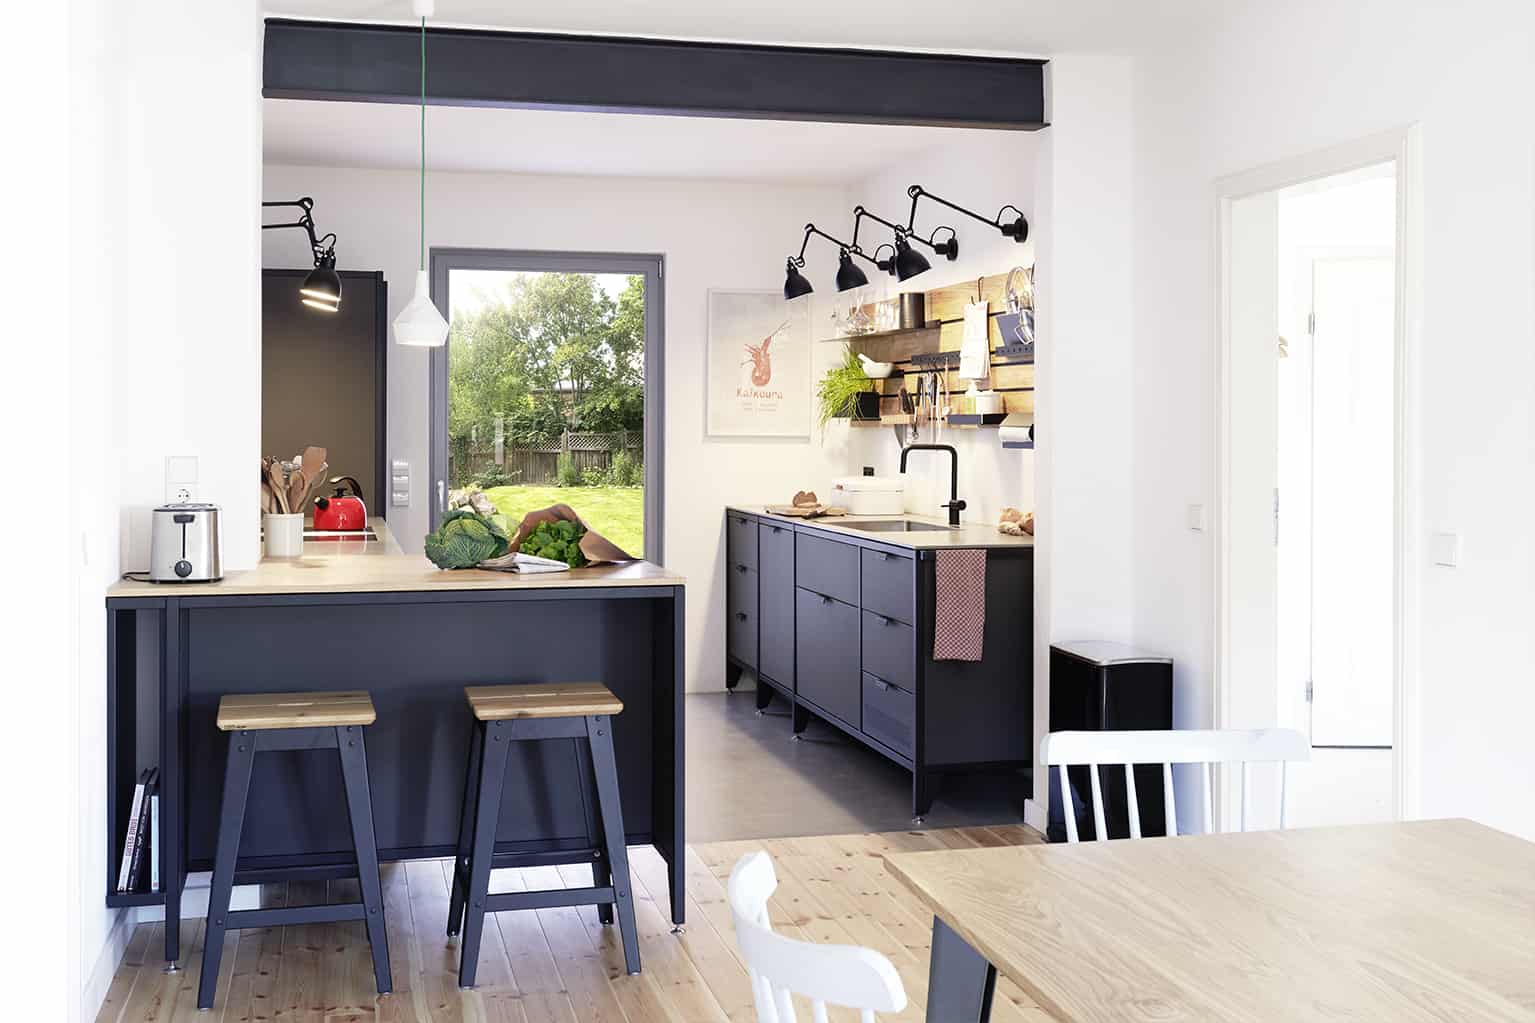 Gemütlicher Wohn- und Kochbereich mit einer dunklen Küche aus Linoleum und Stahl.